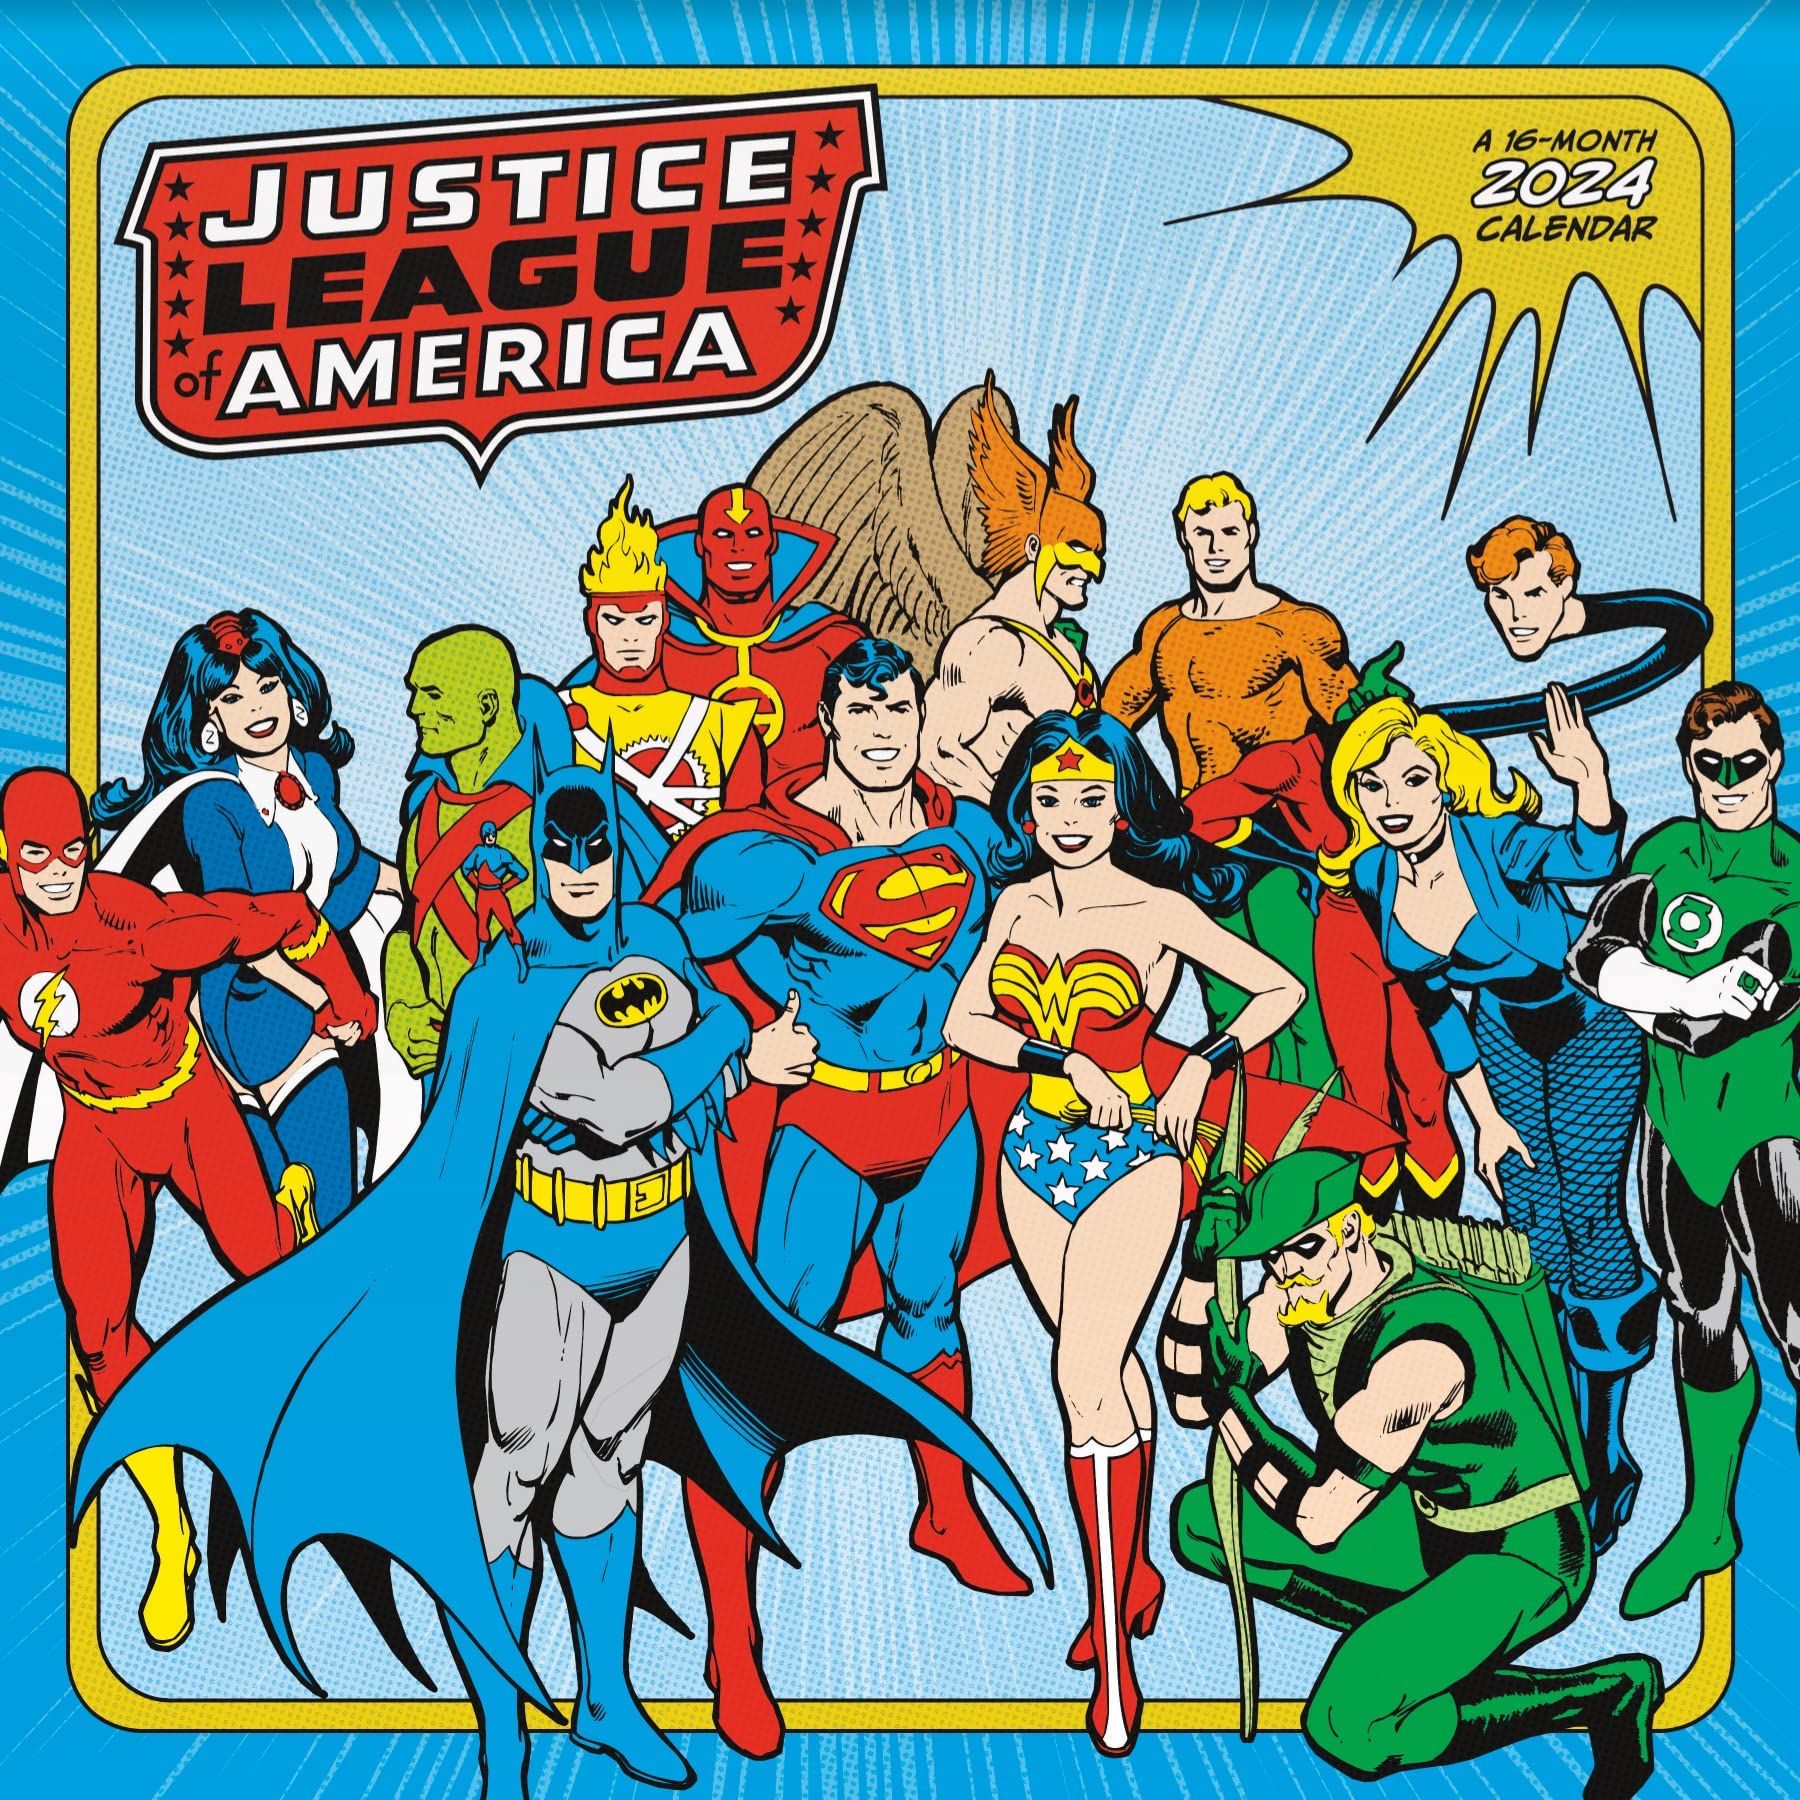 2024 Justice League Calendar Brings Back Iconic Art Fans Demanded